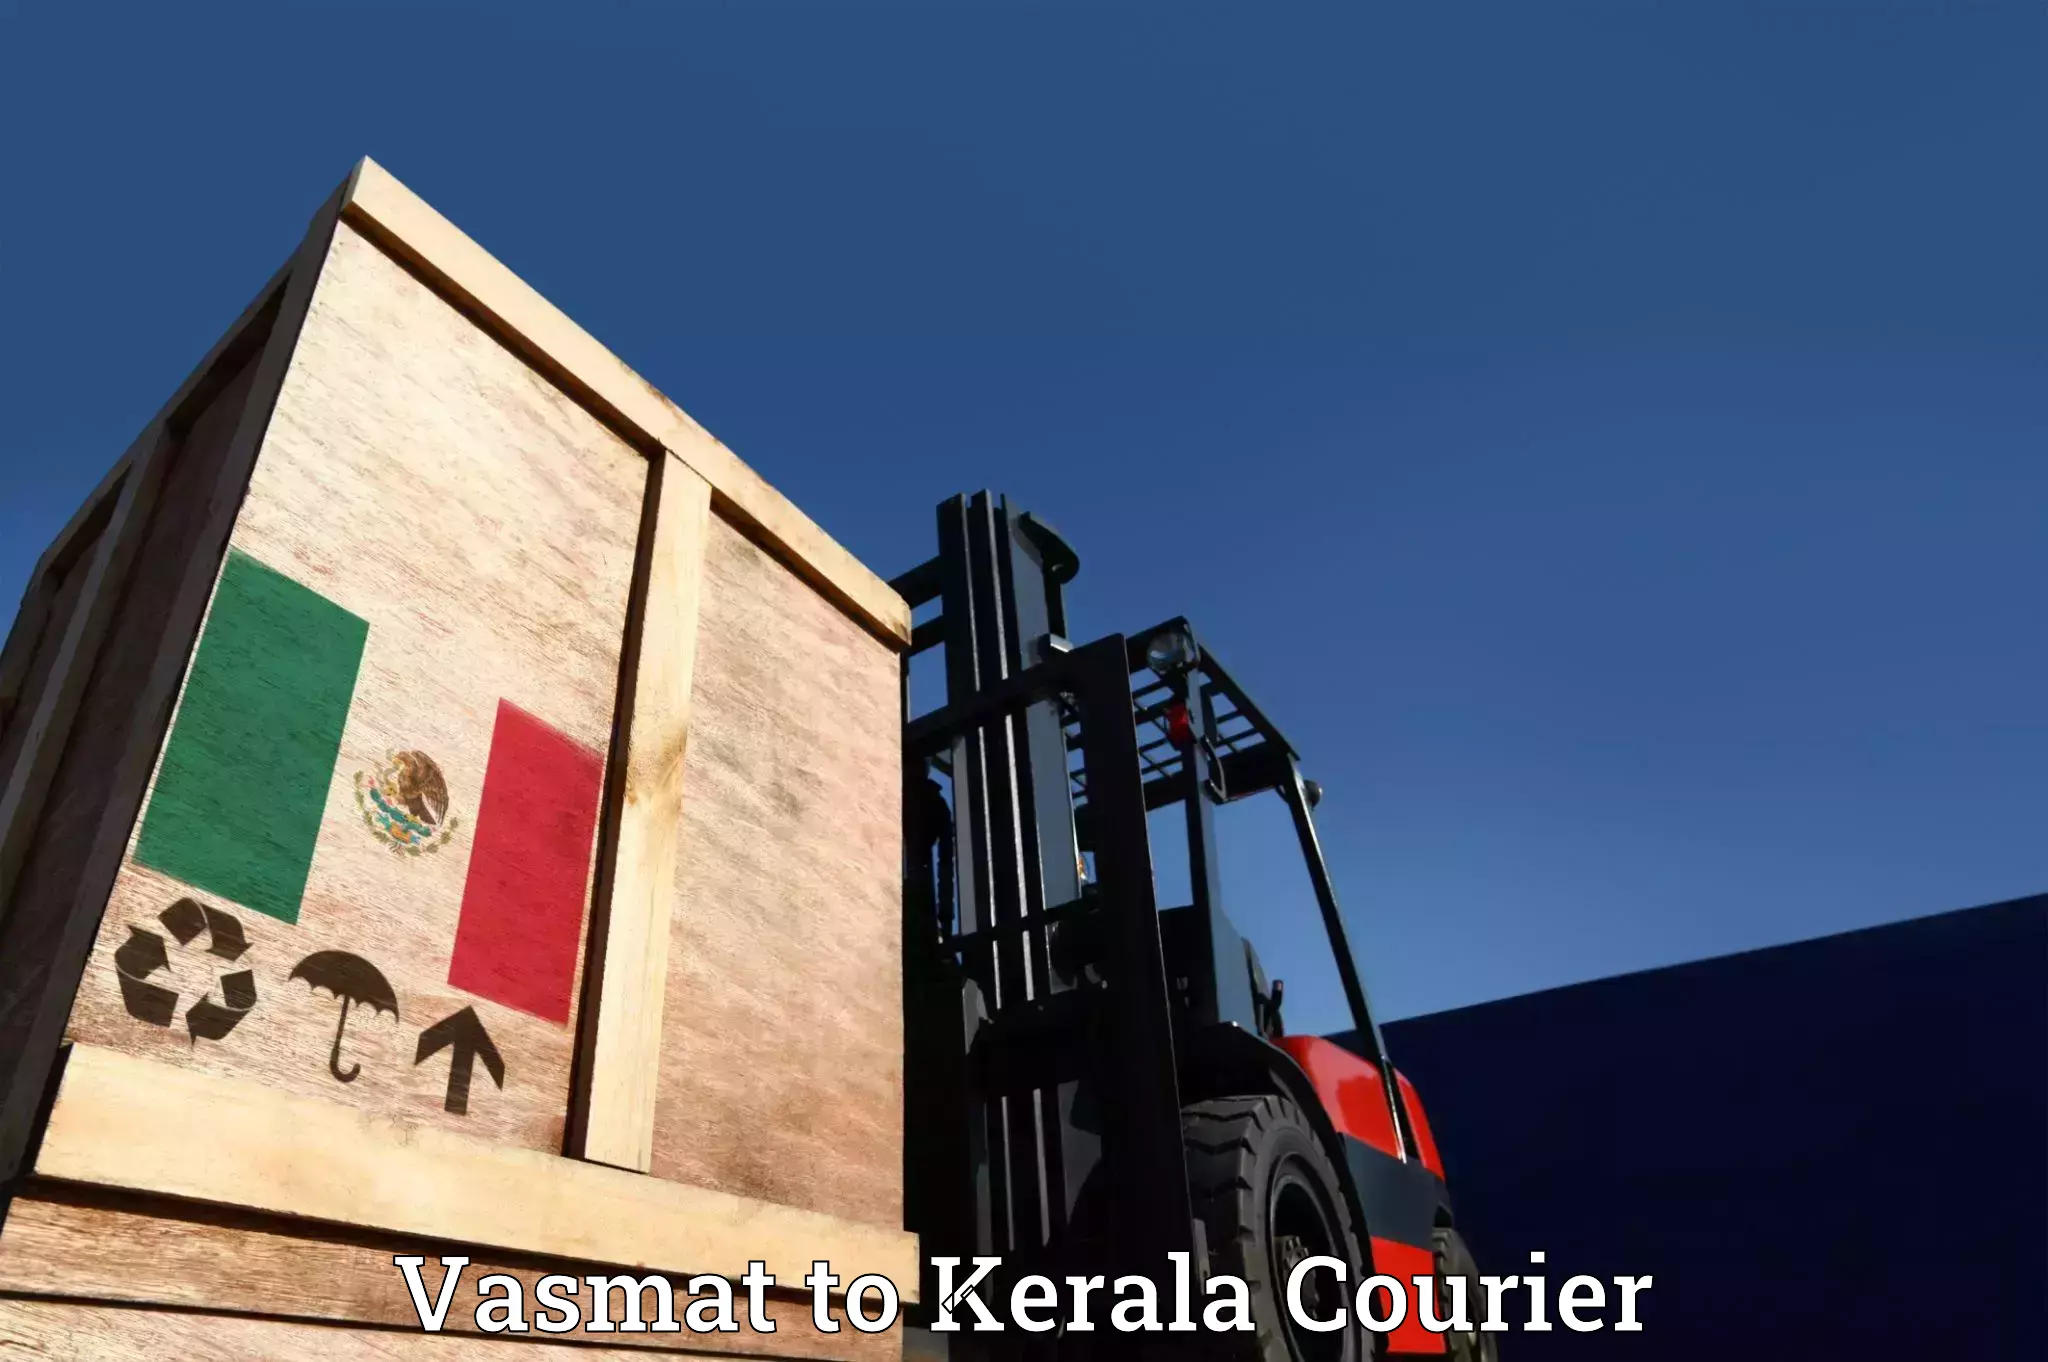 Efficient relocation services in Vasmat to Nedumkandam